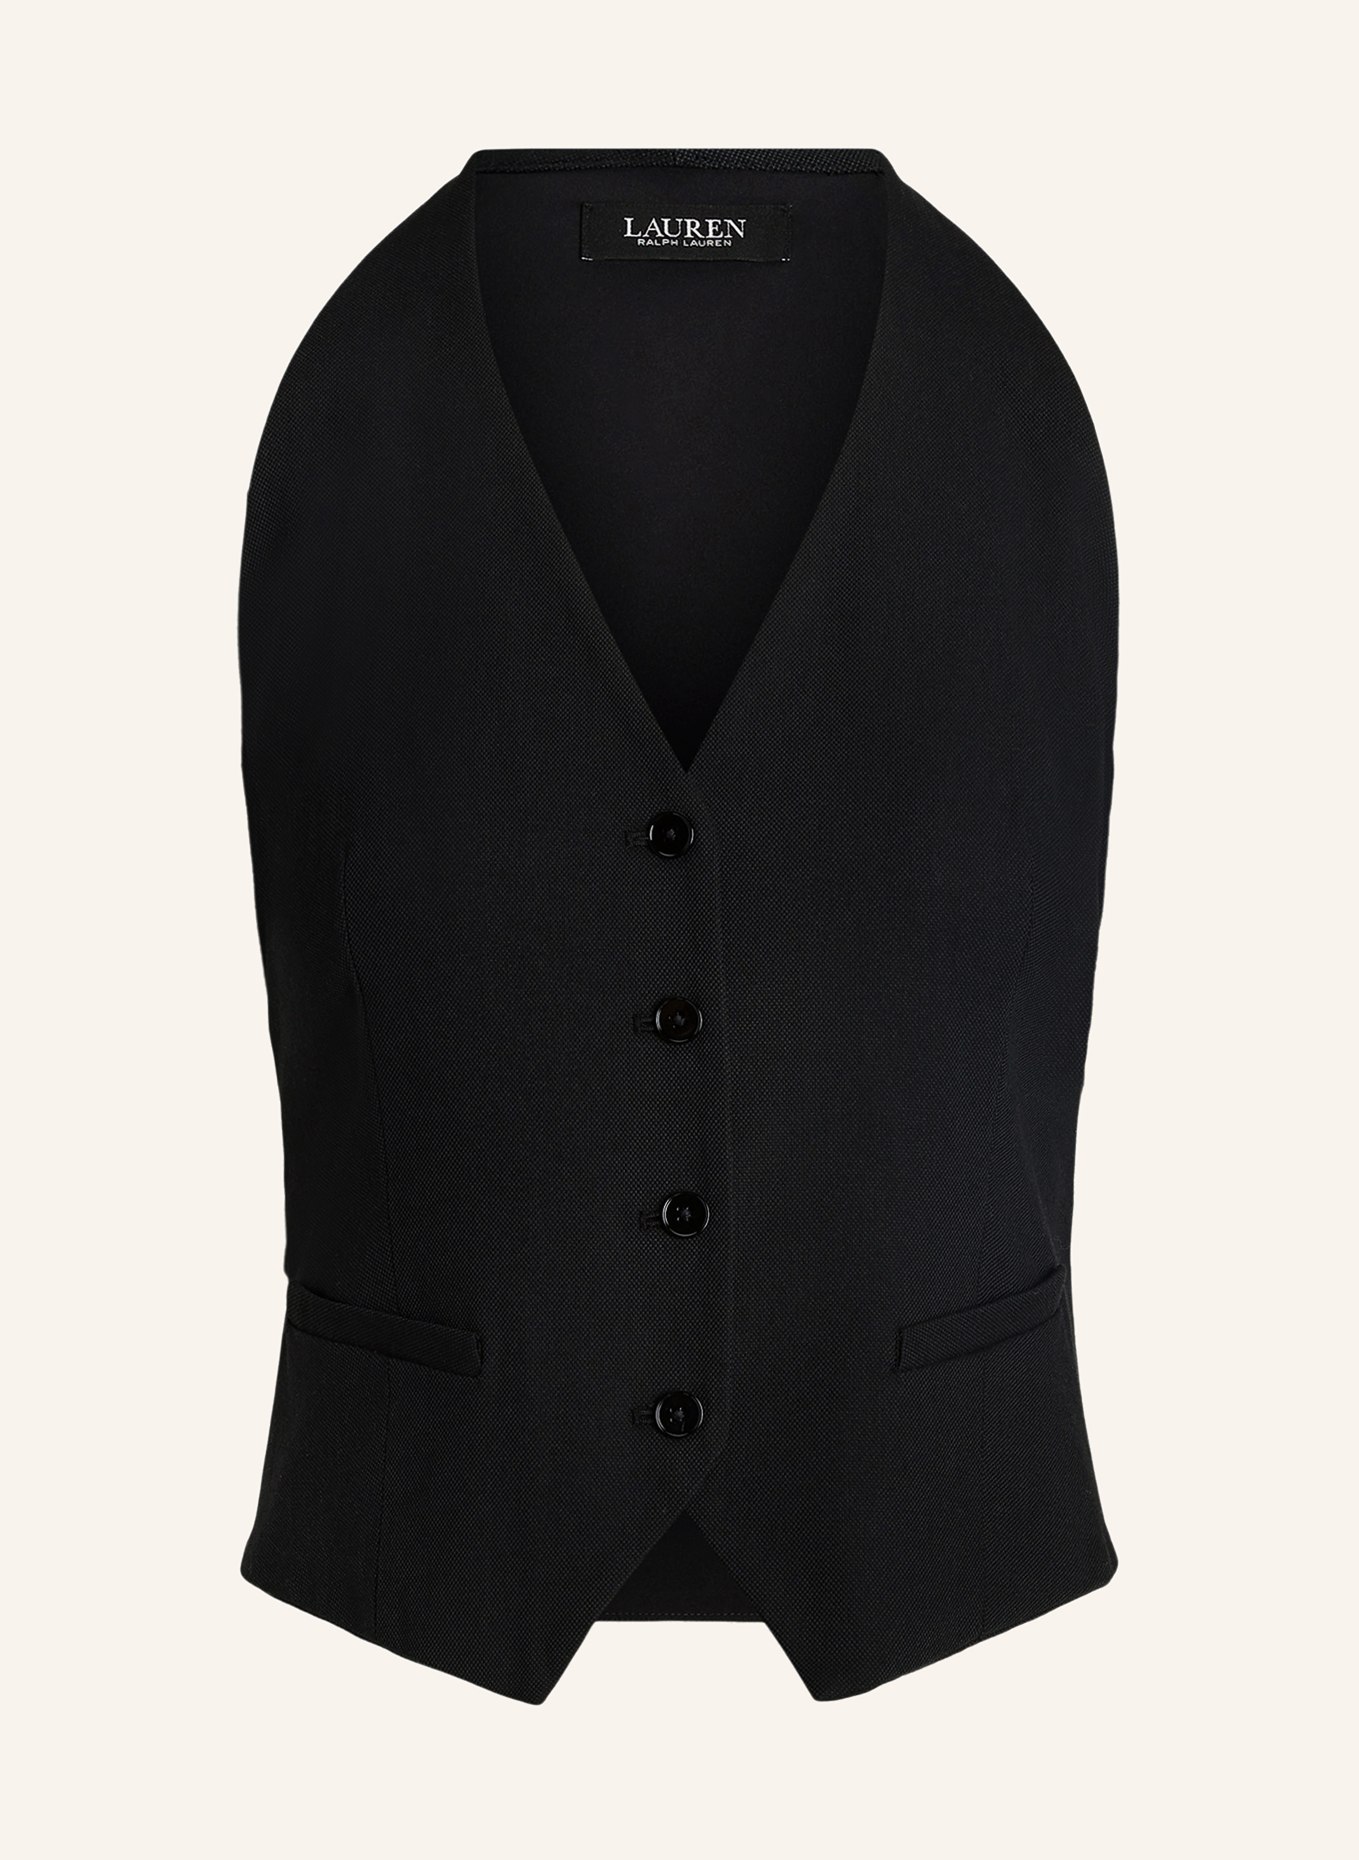 LAUREN RALPH LAUREN Blazer vest, Color: BLACK (Image 1)